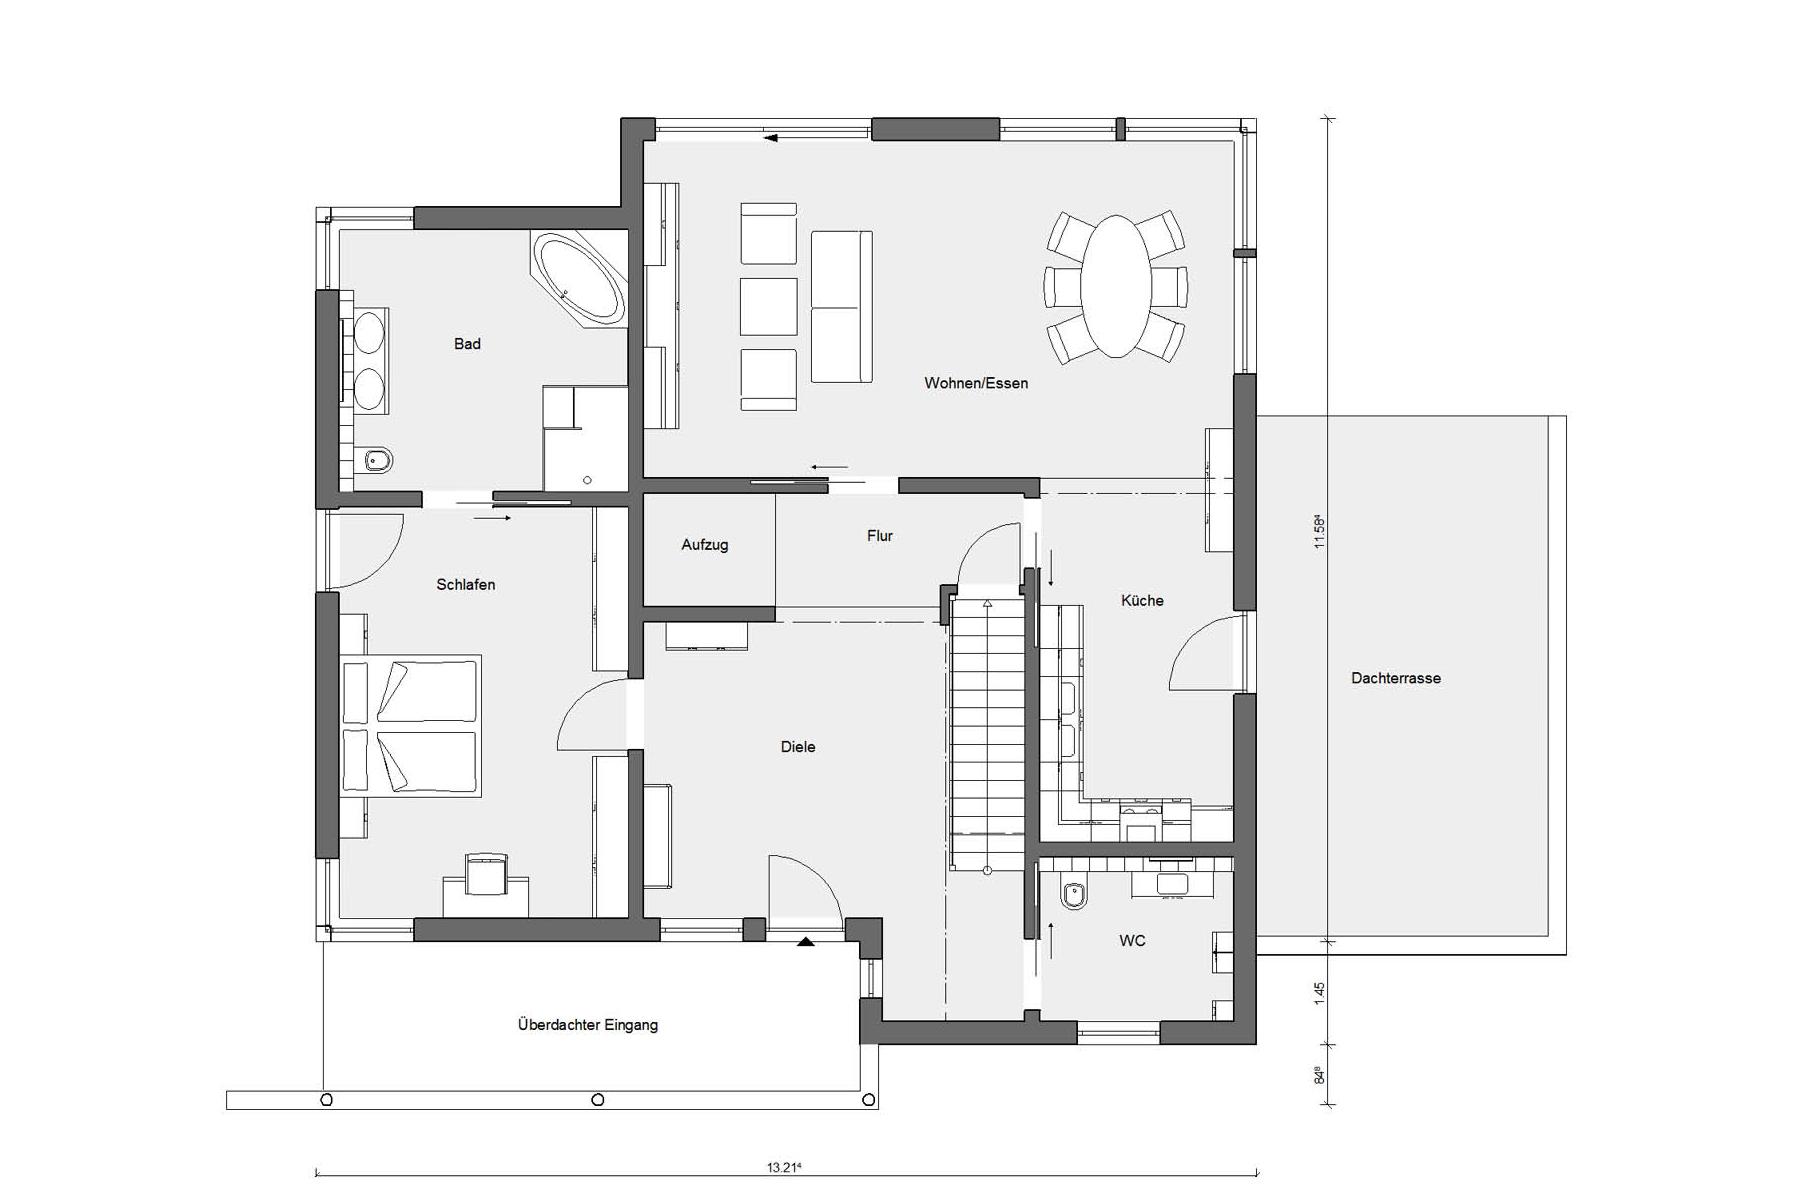 Plan d'étage rez-de-chaussée M 20-321.1 Maison préfabriquée accessible aux fauteuils roulants